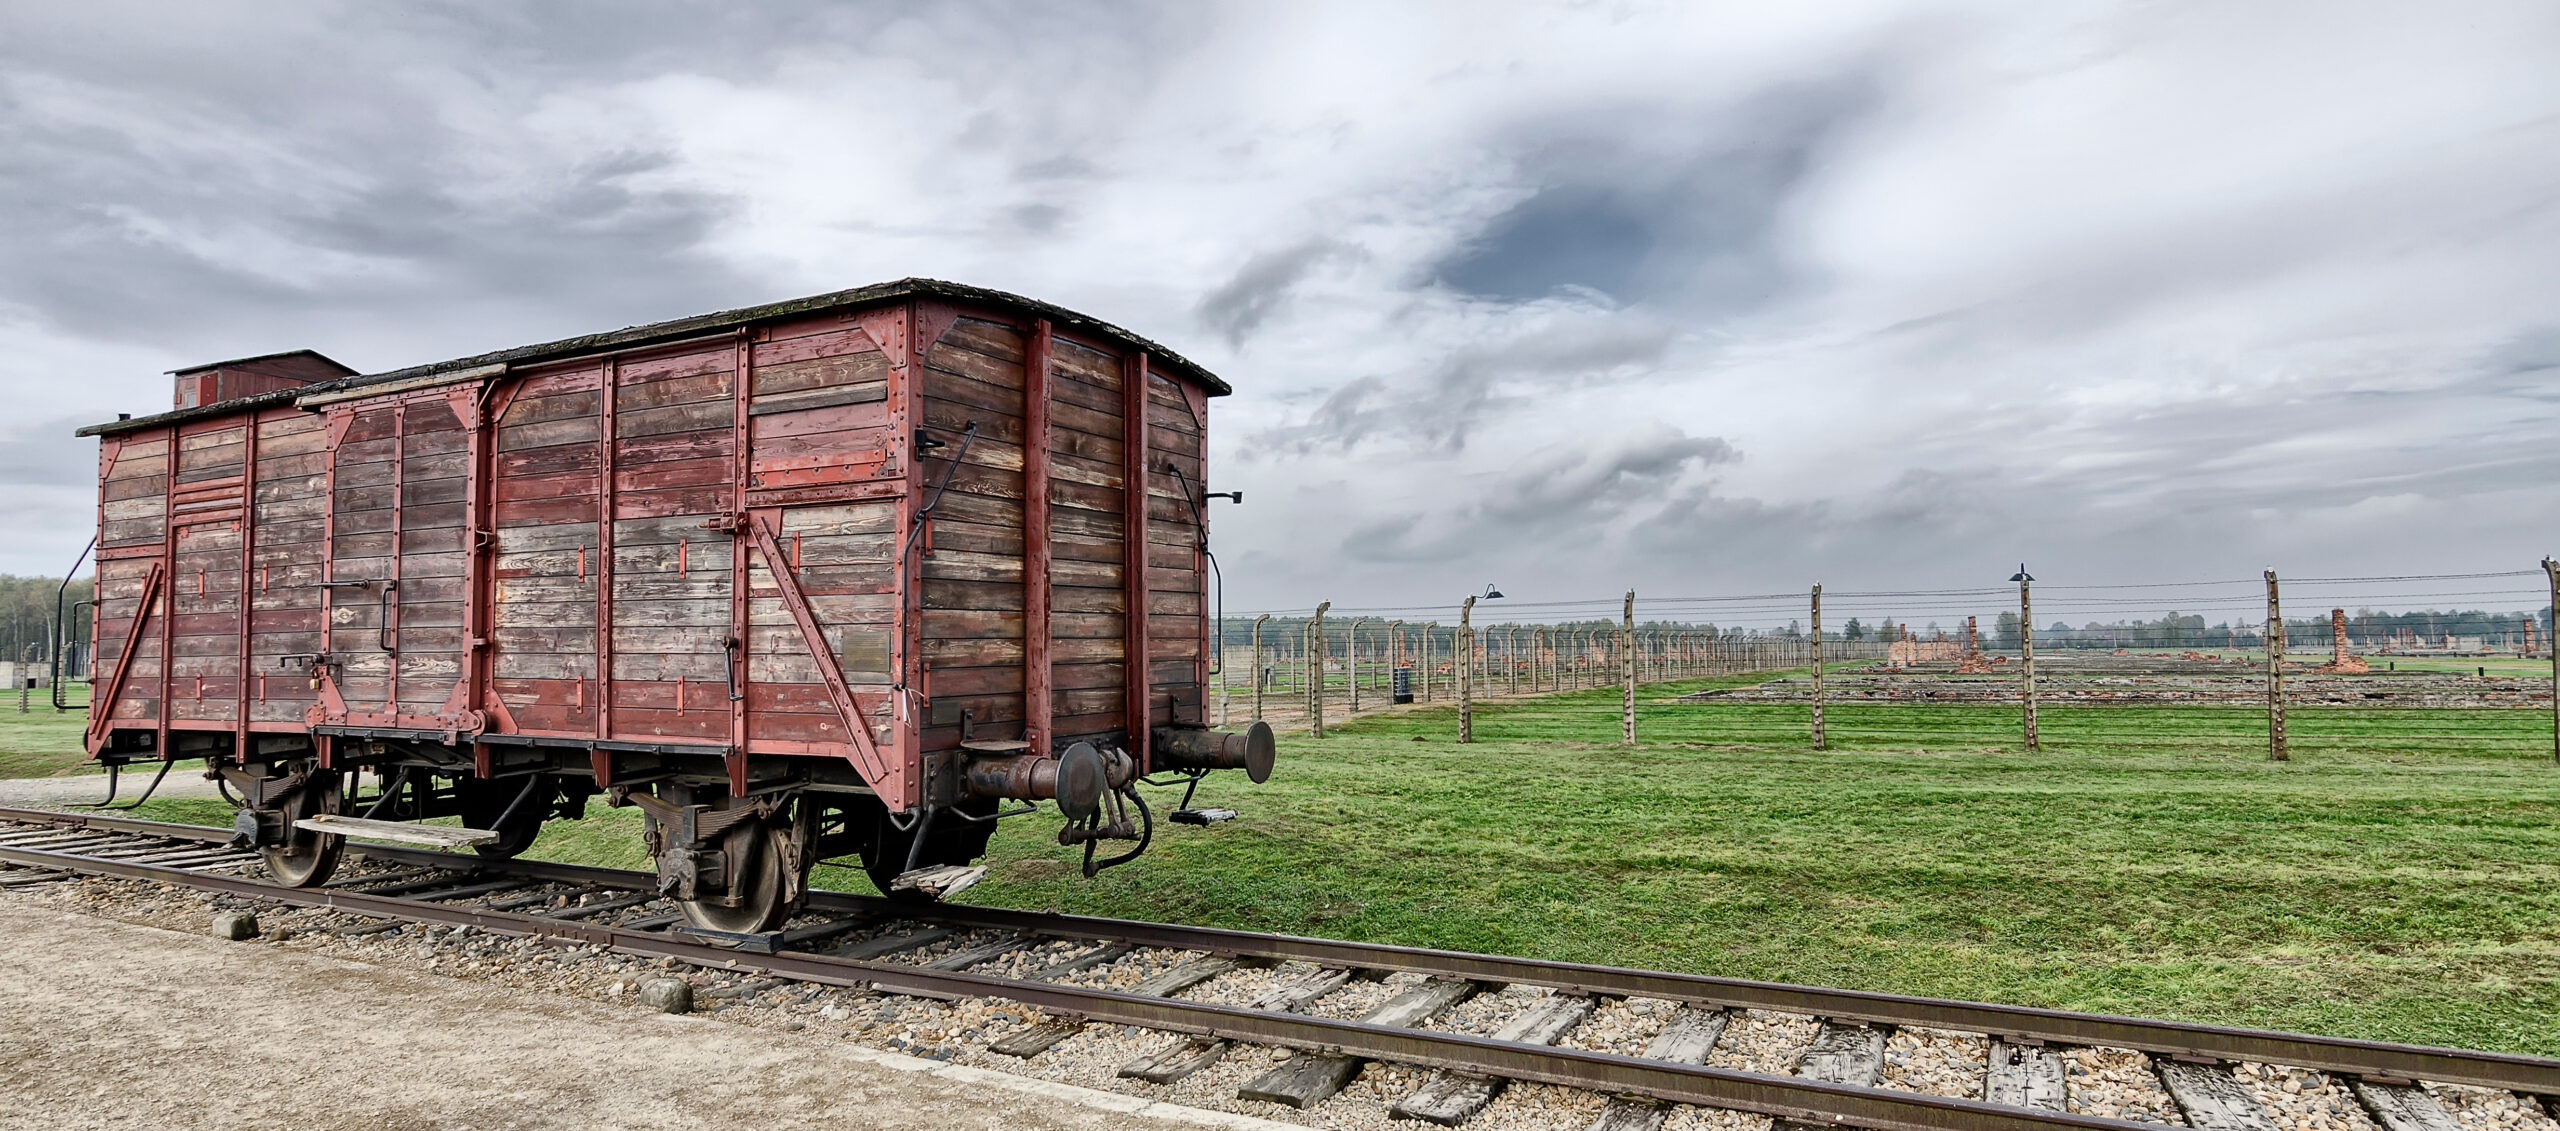 Auschwitz Birkenau railway tracks